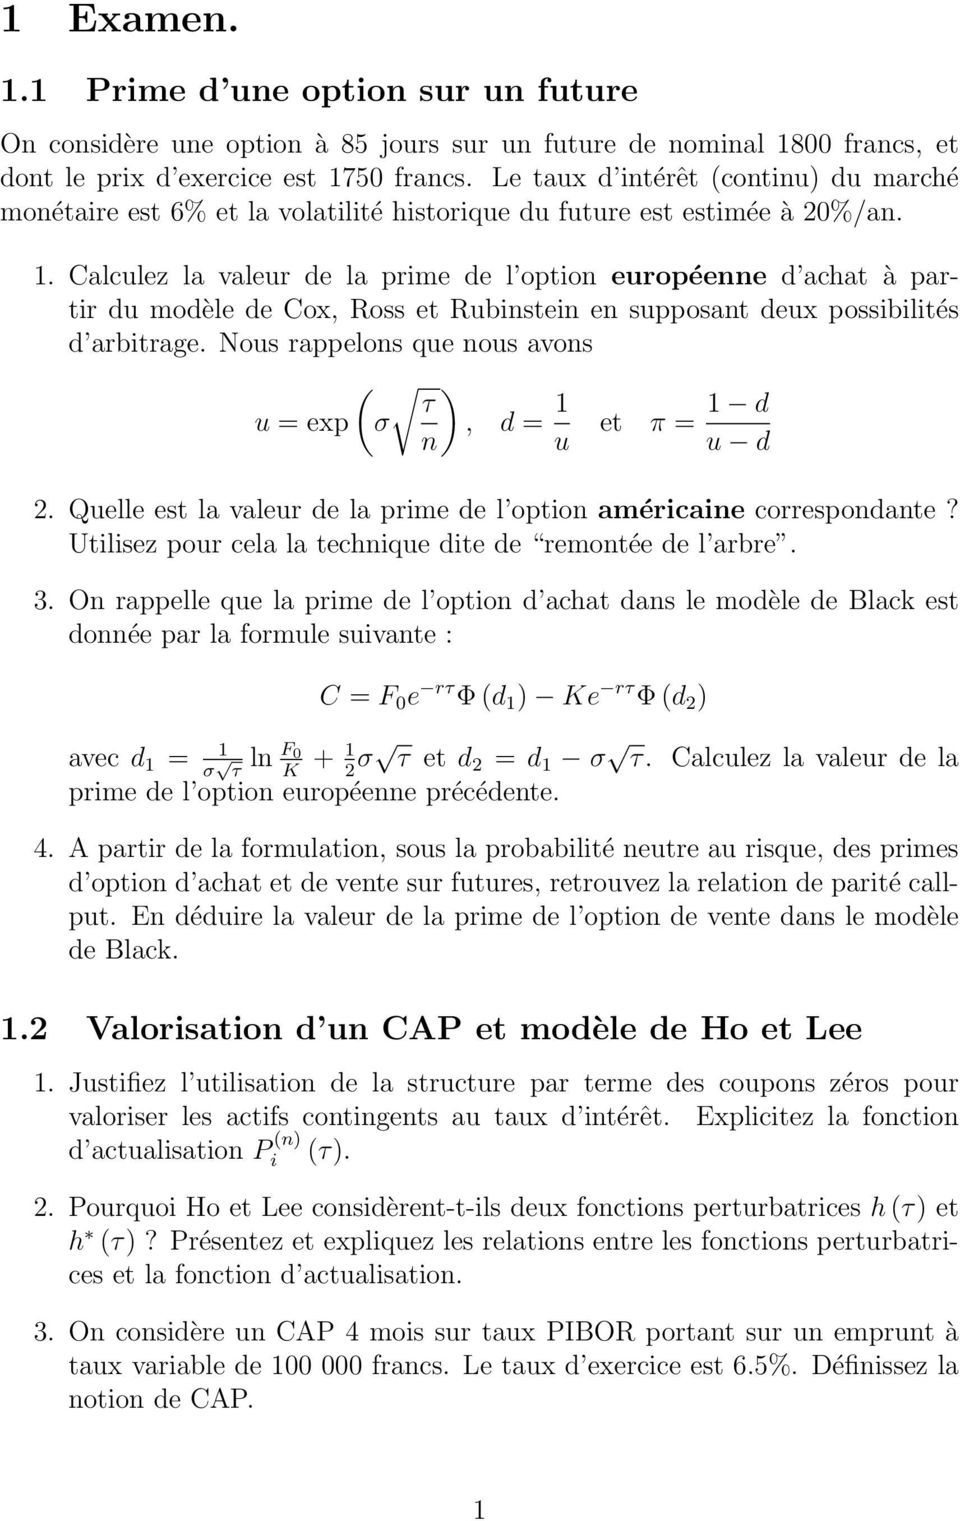 Calculez la valeur de la prime de l opion européenne d acha à parir du modèle de Cox, Ross e Rubinsein en supposan deux possibiliés d arbirage.